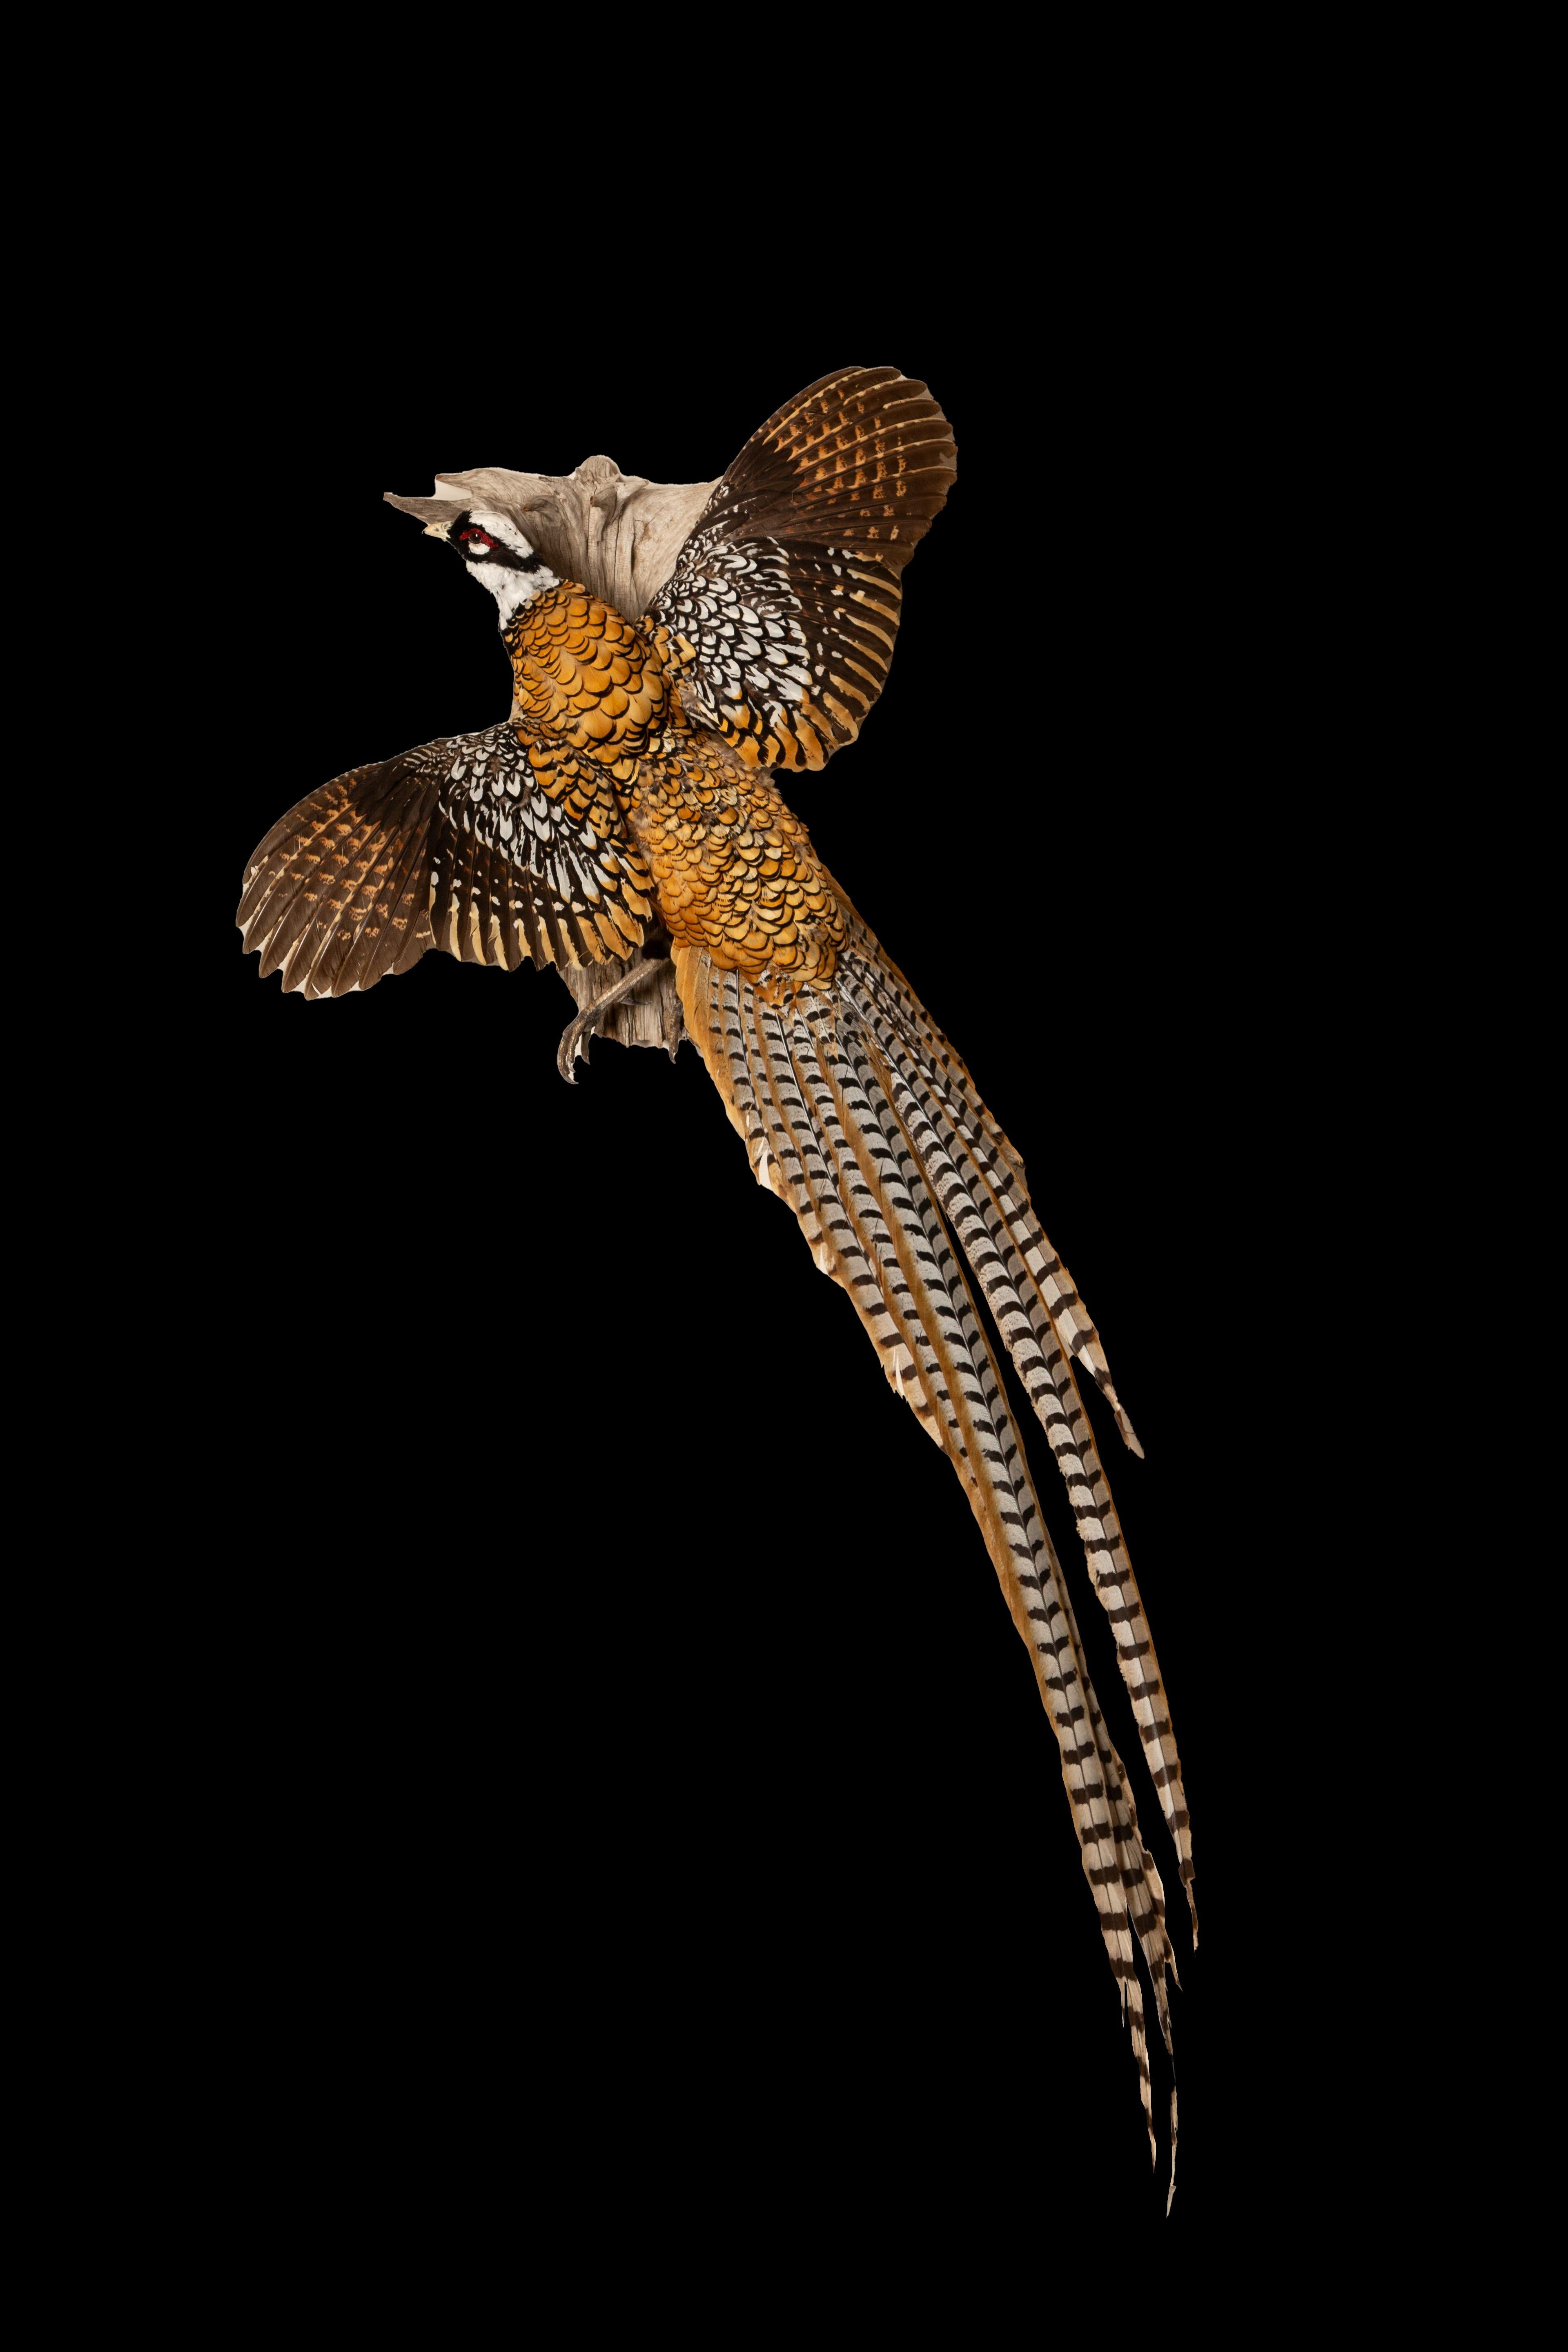  Majestueux  Le faisan de Reeves volant (Syrmaticus reevesii), un étonnant spécimen aviaire originaire de Chine, a été méticuleusement préservé afin de capturer sa beauté complexe et son histoire remarquable. Nommé en l'honneur du célèbre